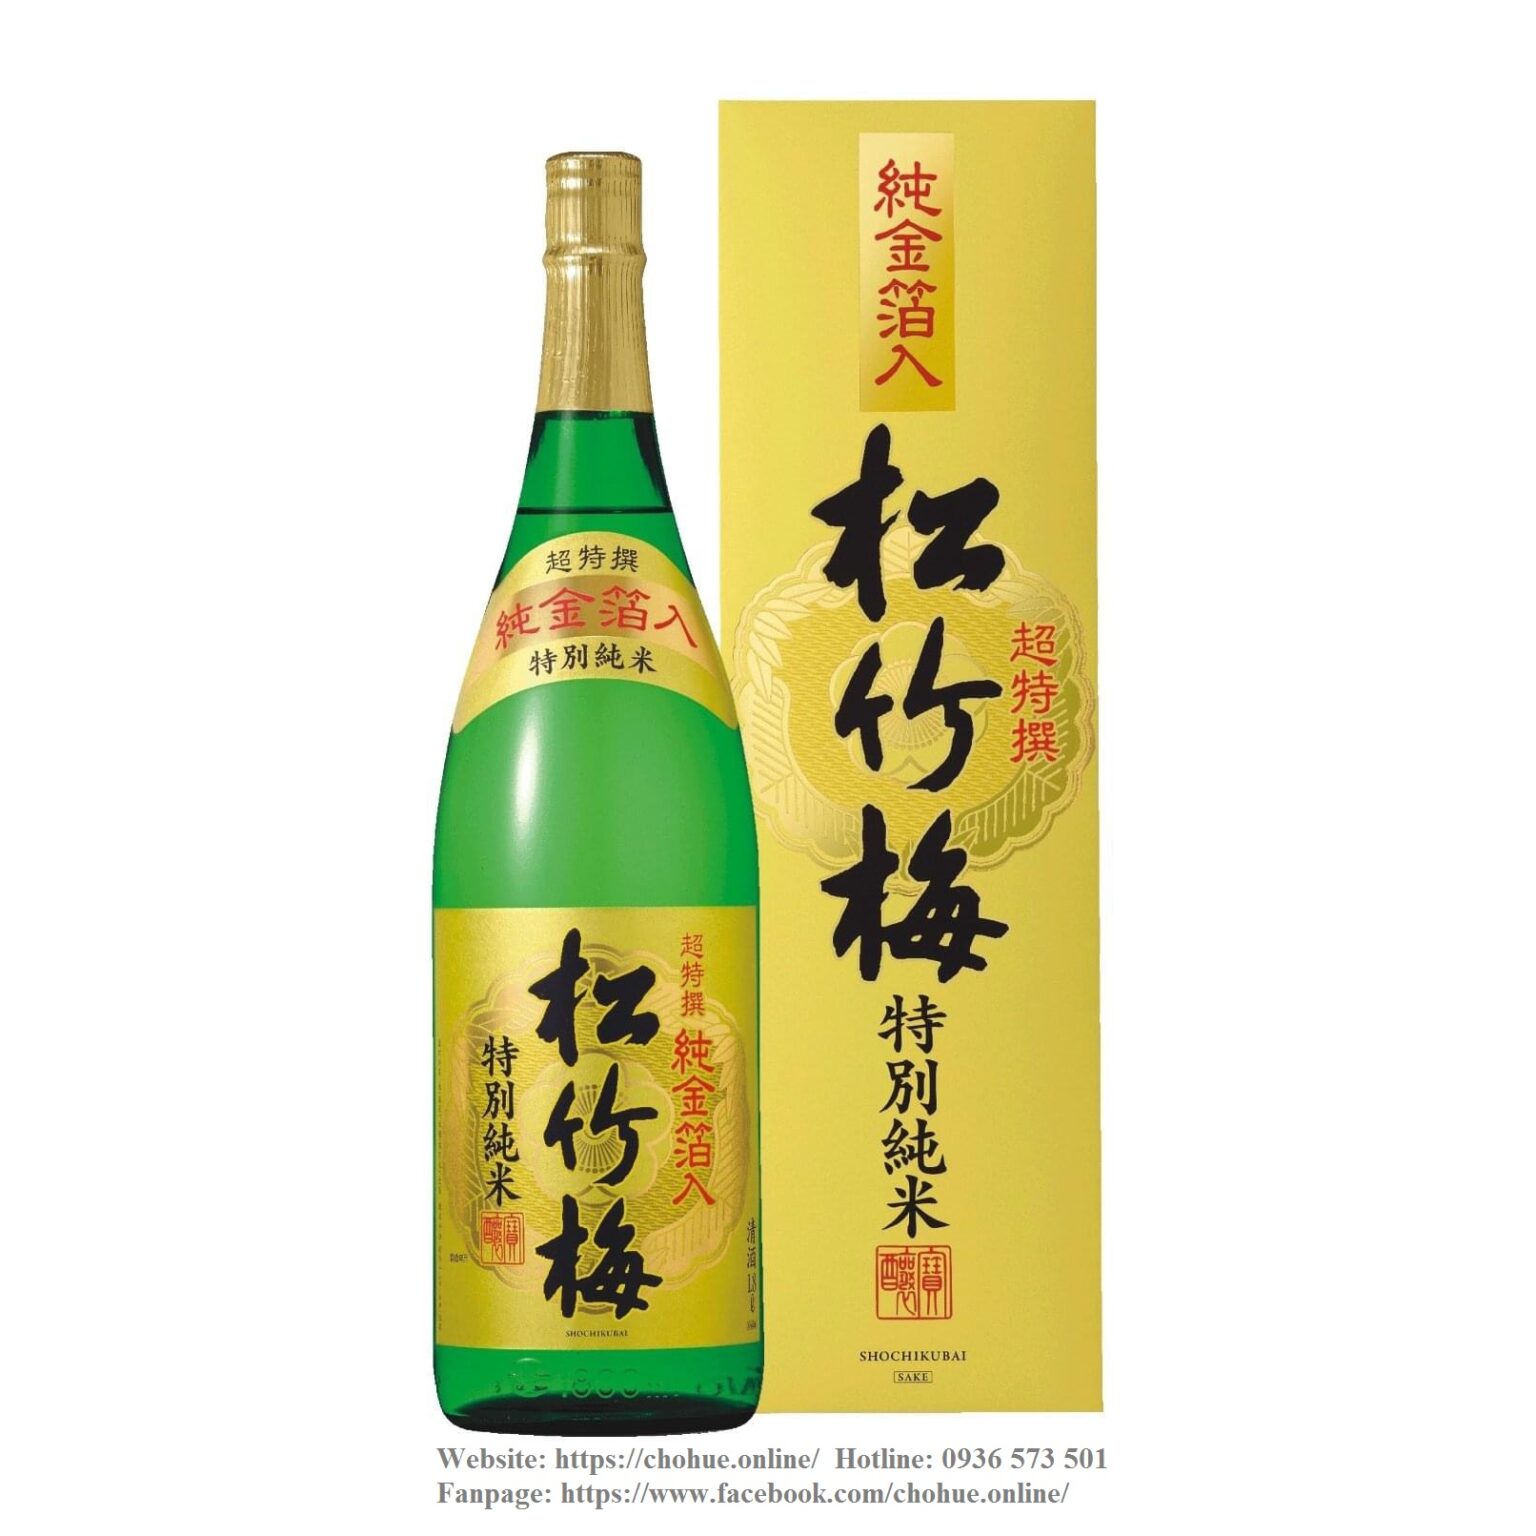 ruou-sake-tokubetsu-junmai-1800ml